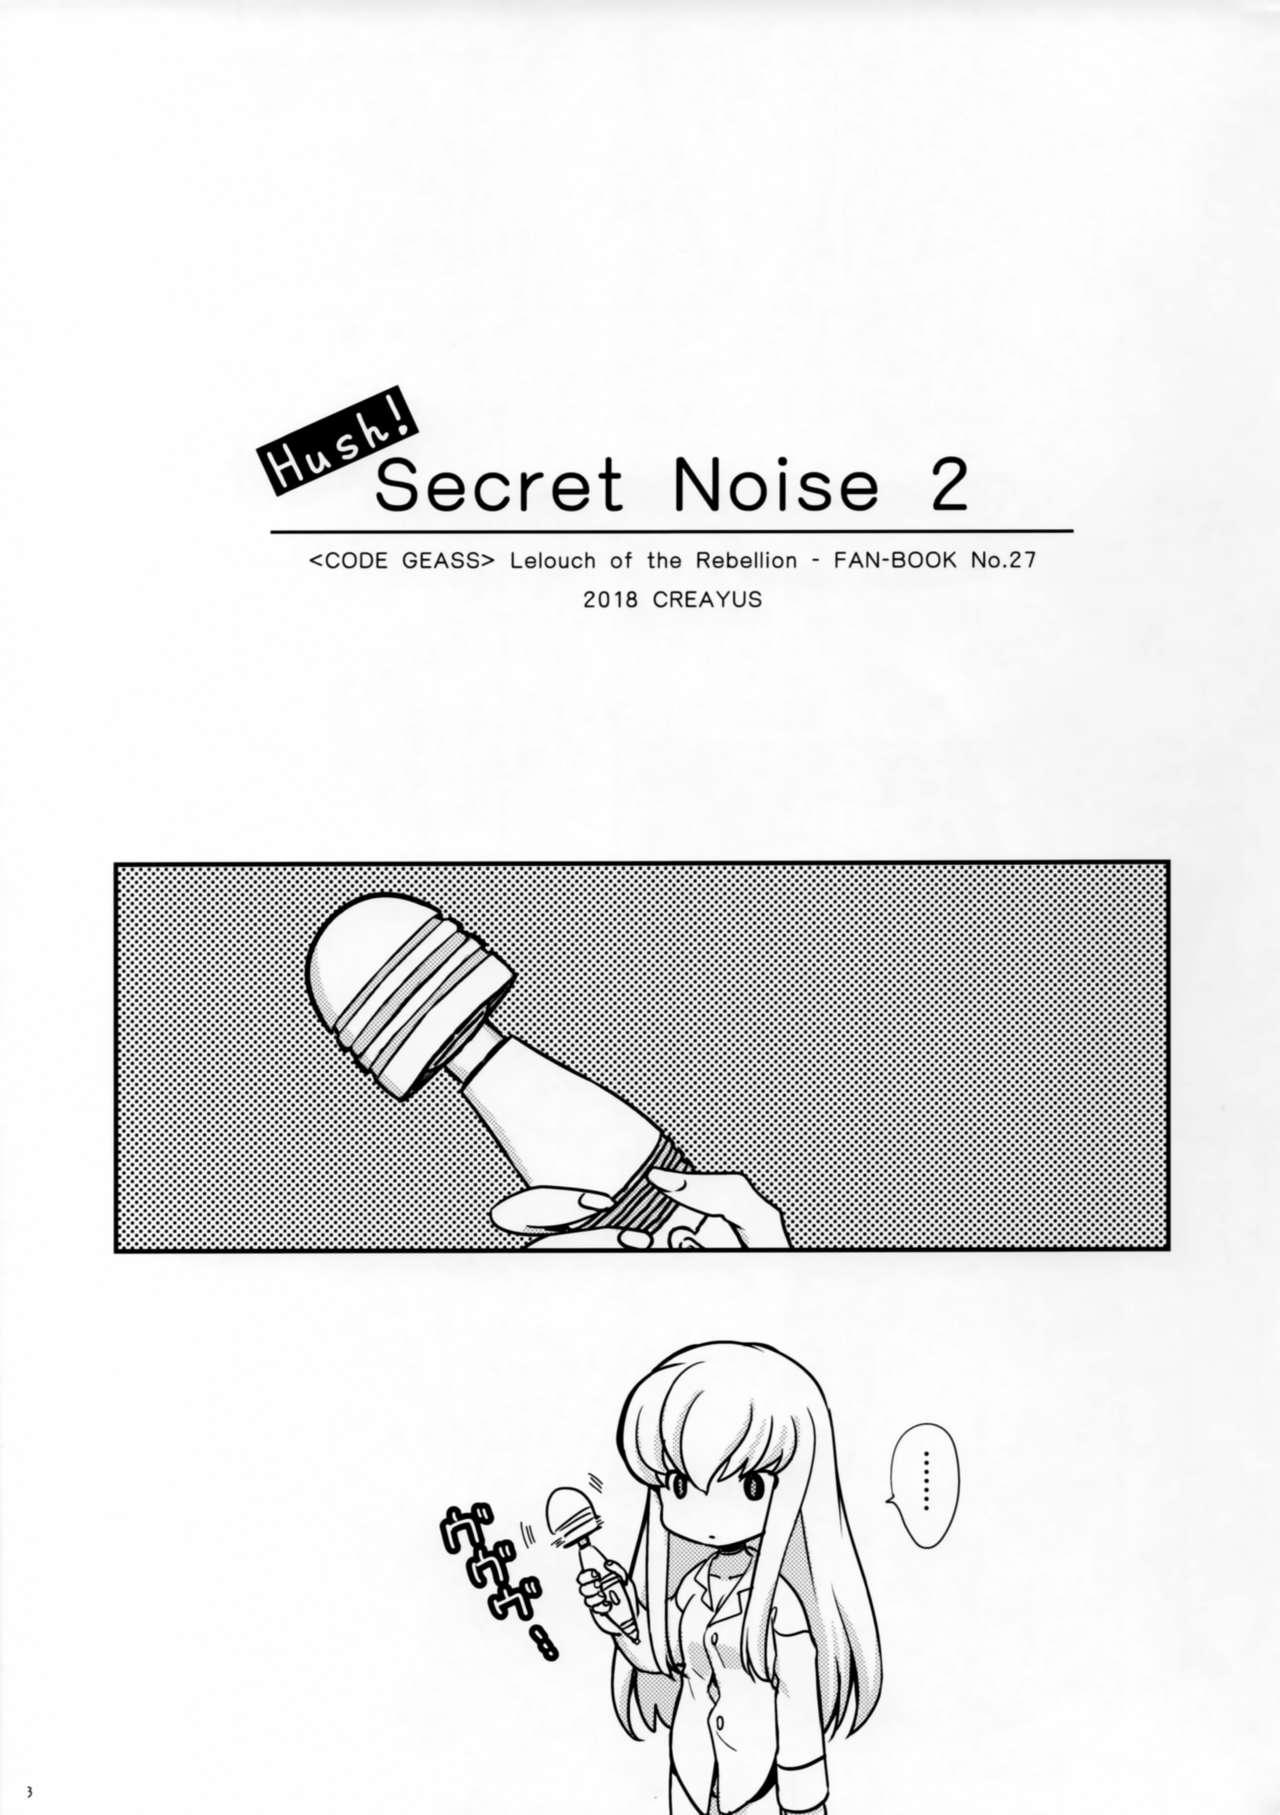 Hush! SECRET NOISE 2 1